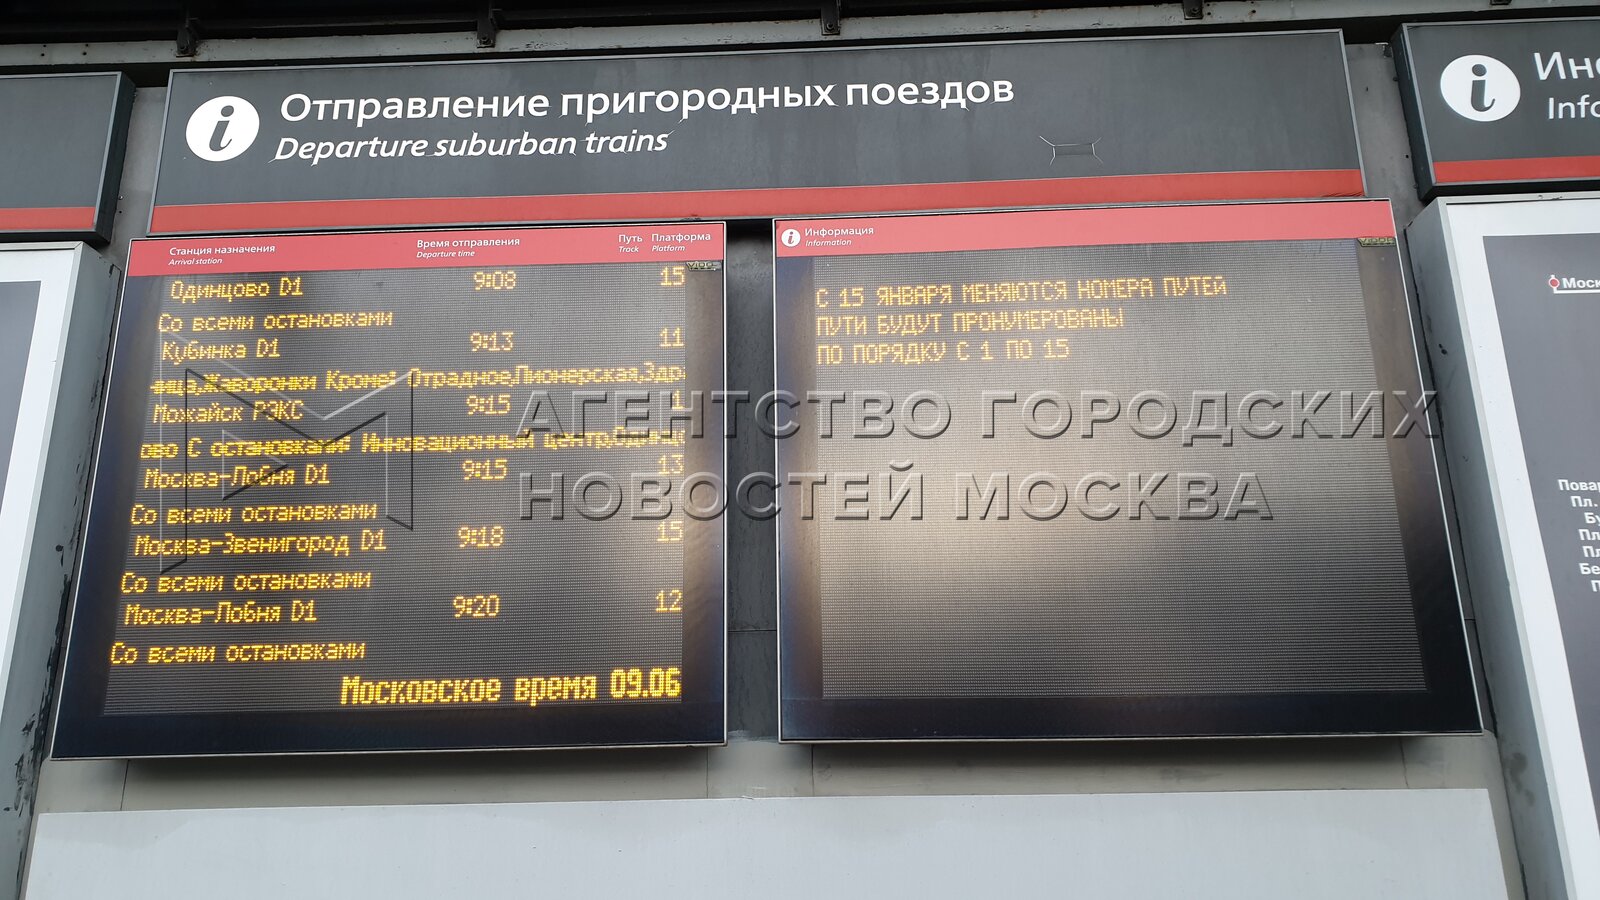 Расписание поездов белорусского вокзала билеты. Белорусский вокзал пригородные электрички табло. Белорусский вокзал табло. Схема платформ белорусского вокзала пригородных поездов.